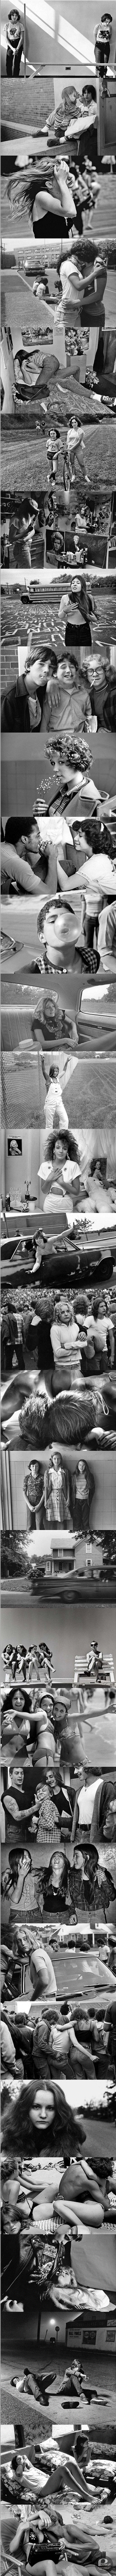 Niezwykłe zdjęcia z lat 1960-1980 – Mają w sobie jakąś magię, która sprawia że tęskni się za tymi czasami, nawet jeśli się w nich nie żyło 